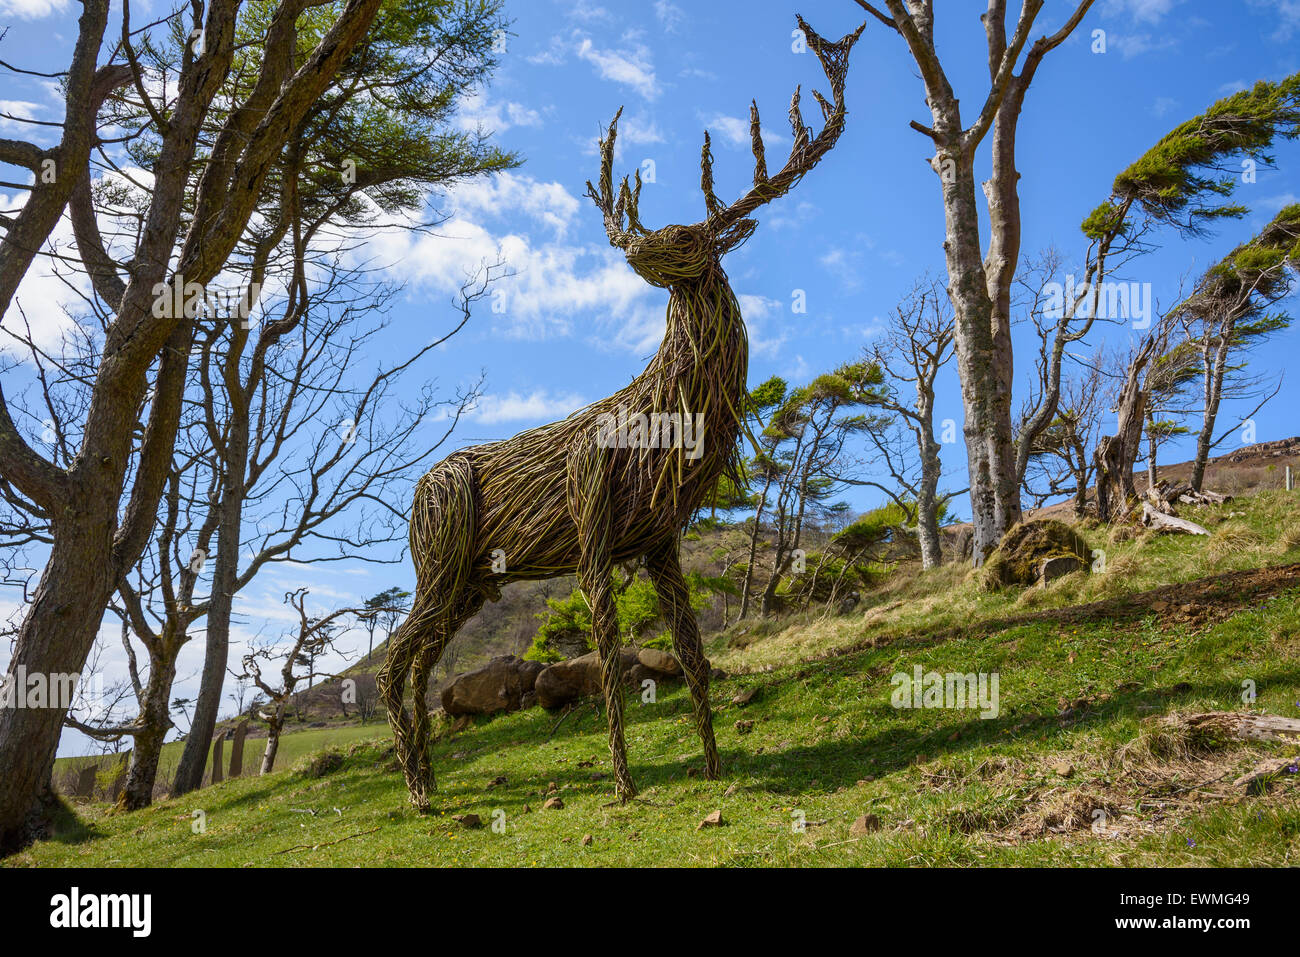 Willow-Skulptur von einem Rothirsch Hirsch, Art in Nature Sculpture Trail, Calgary Bay, Isle of Mull, Hebriden, Argyll und Bute, Scotland Stockfoto